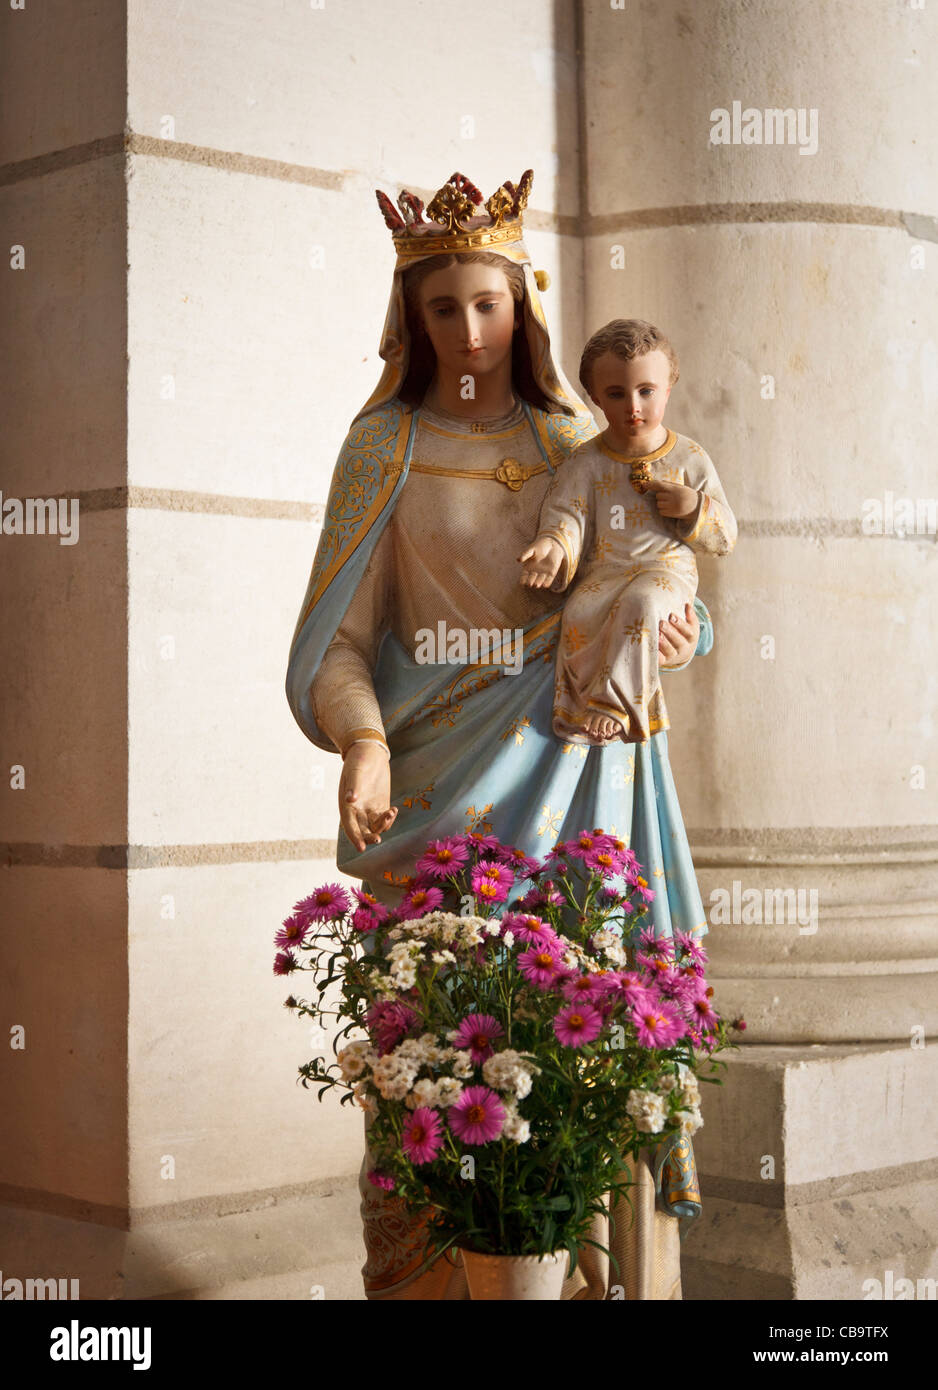 Vergine Maria e Gesù statua in una chiesa di fiori nella parte anteriore Foto Stock